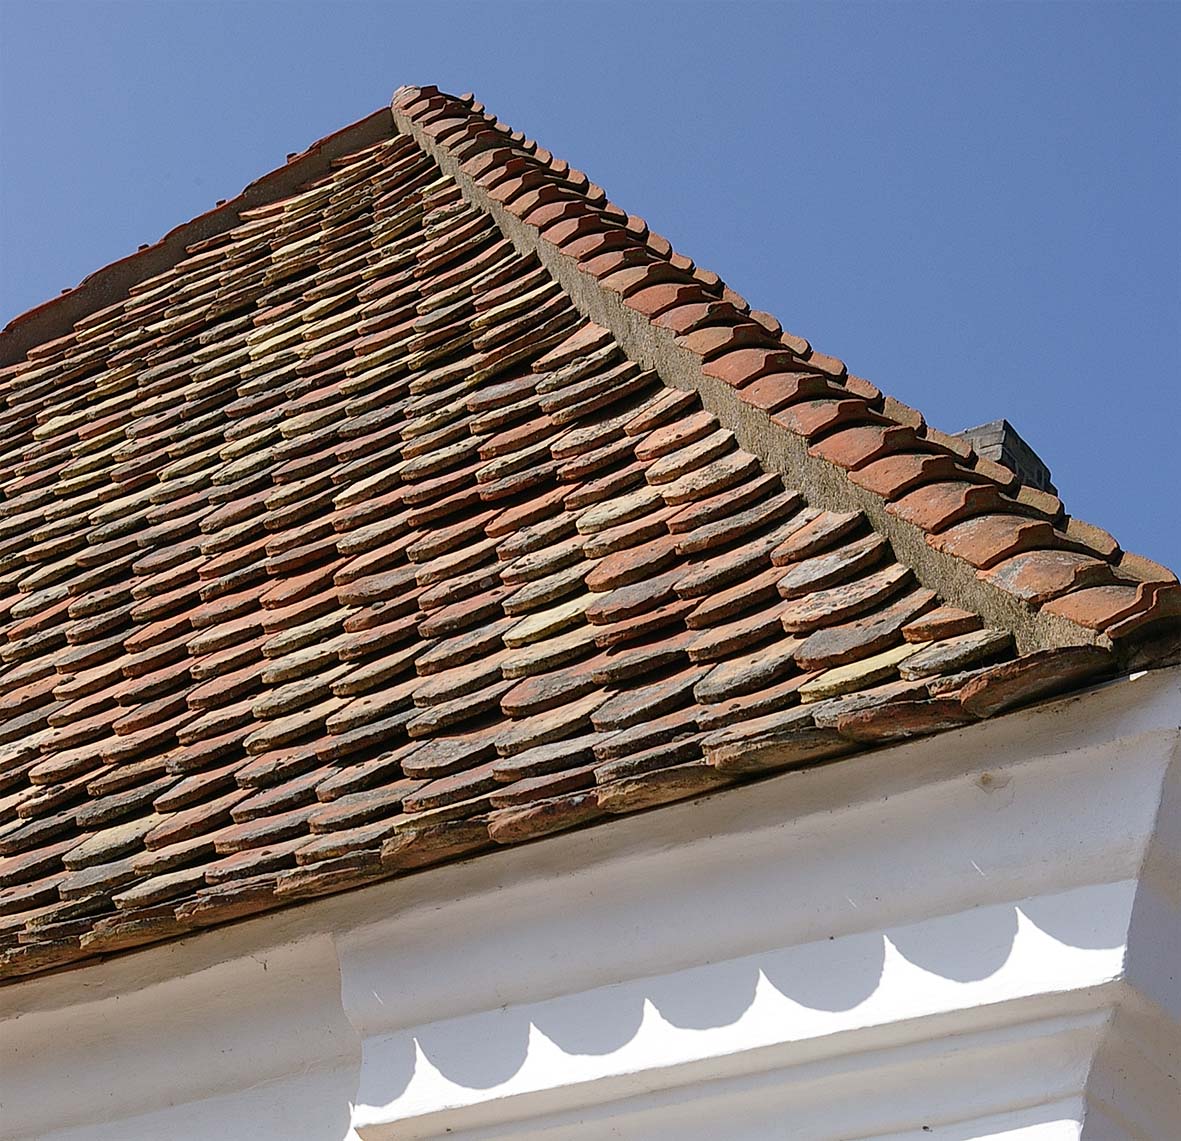 La tuile plate est un type de tuile conçu pour les toits à 45°. © Sven Rosborn, CC BY-SA 3.0, Wikimedia Commons